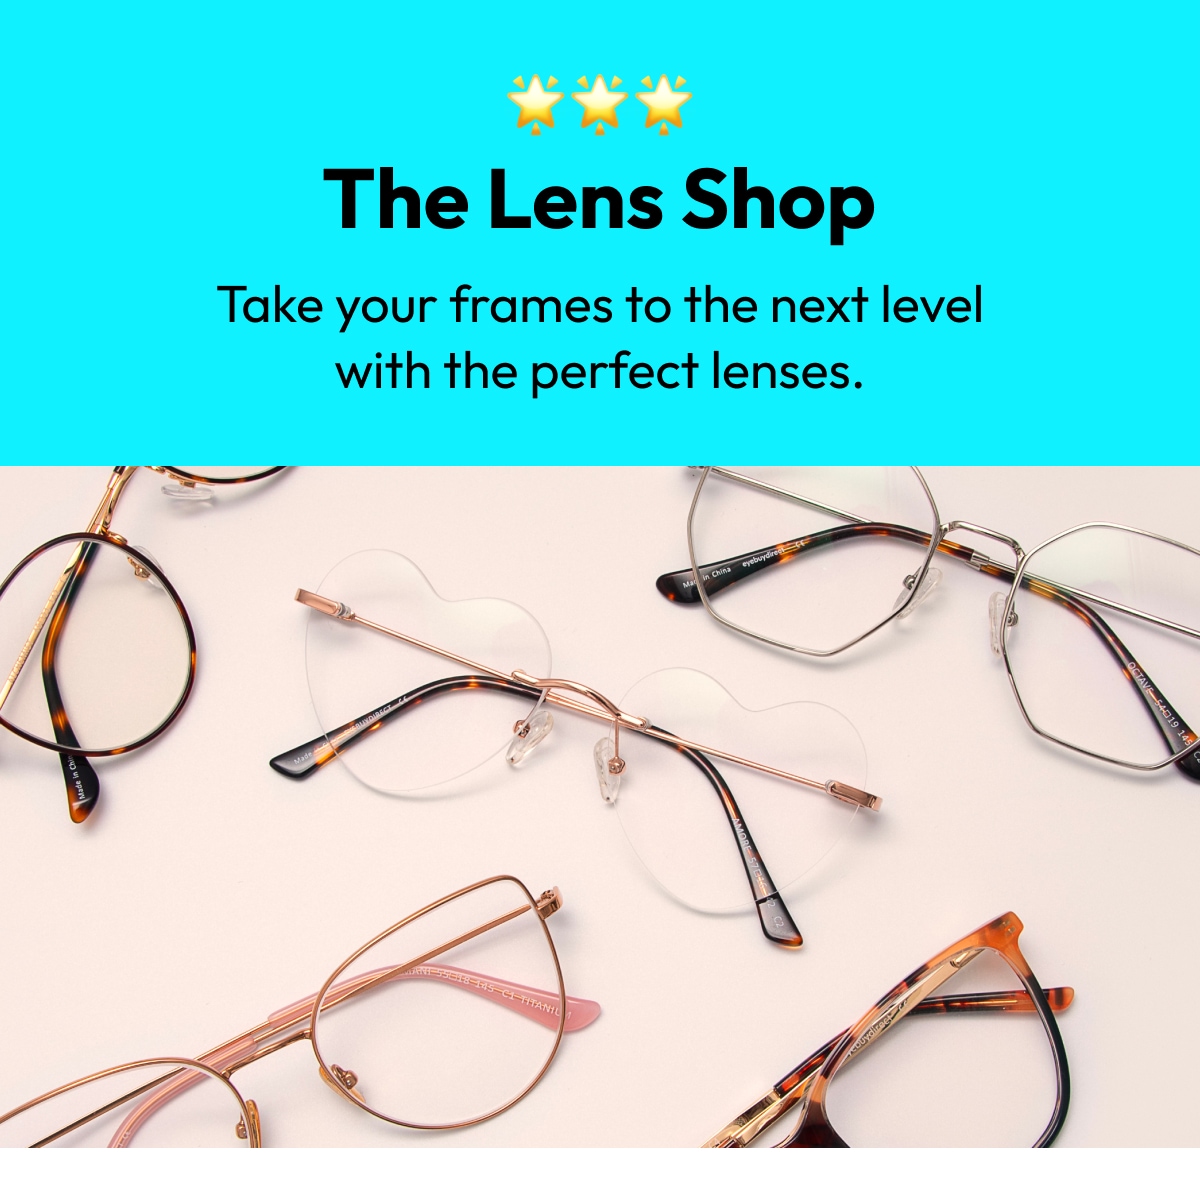 The Lens Shop